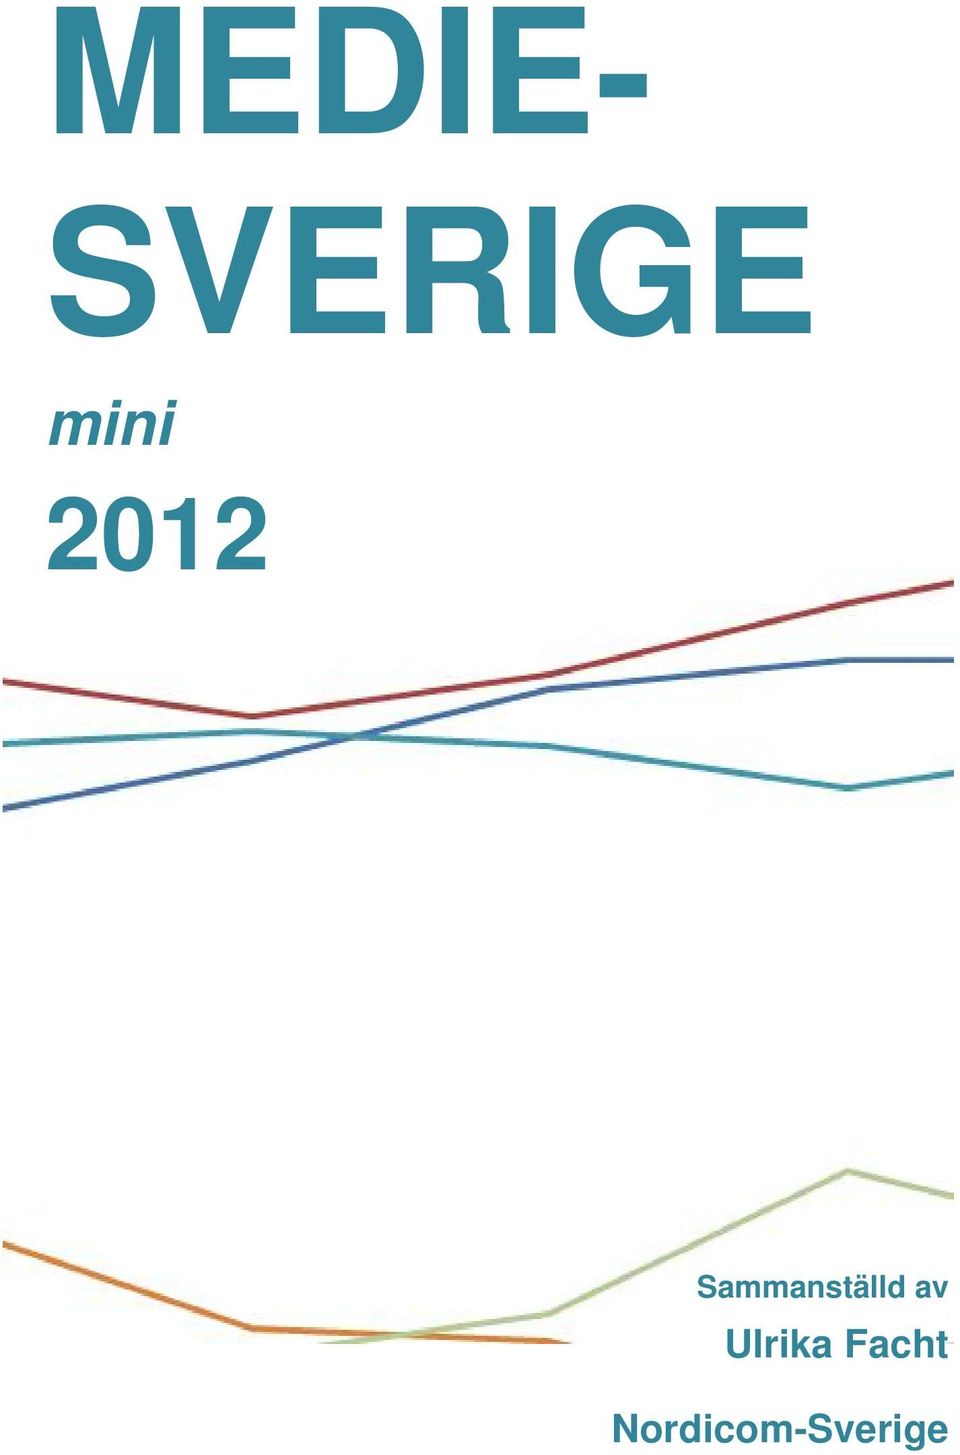 MEDIE- SVERIGE. mini. Ulrika Facht. Nordicom-Sverige. Sammanställd av - PDF  Free Download